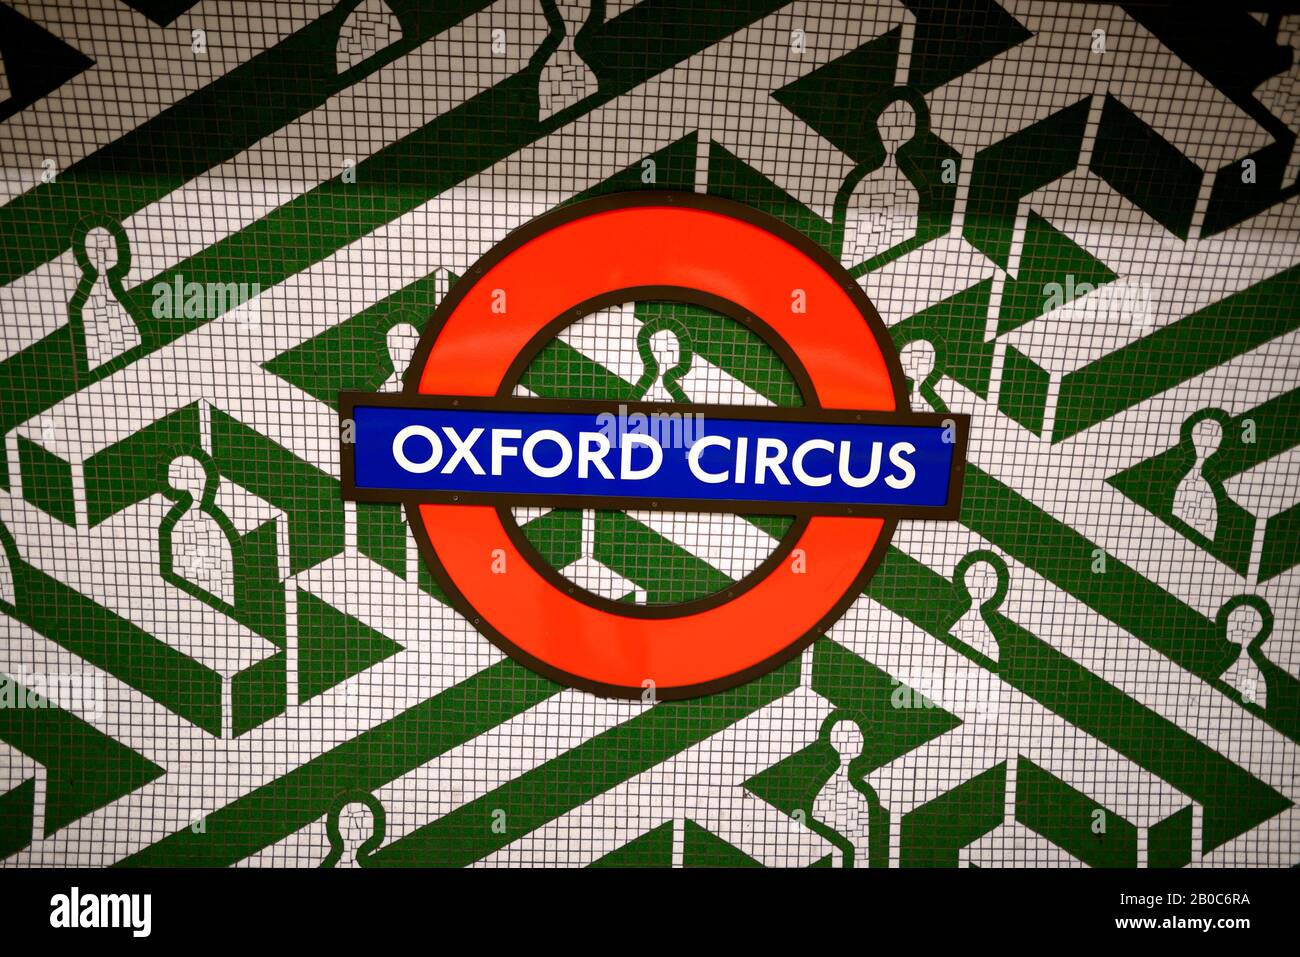 Londra, Inghilterra, Regno Unito. Stazione metropolitana Oxford Circus - piastrelle sulla piattaforma Foto Stock